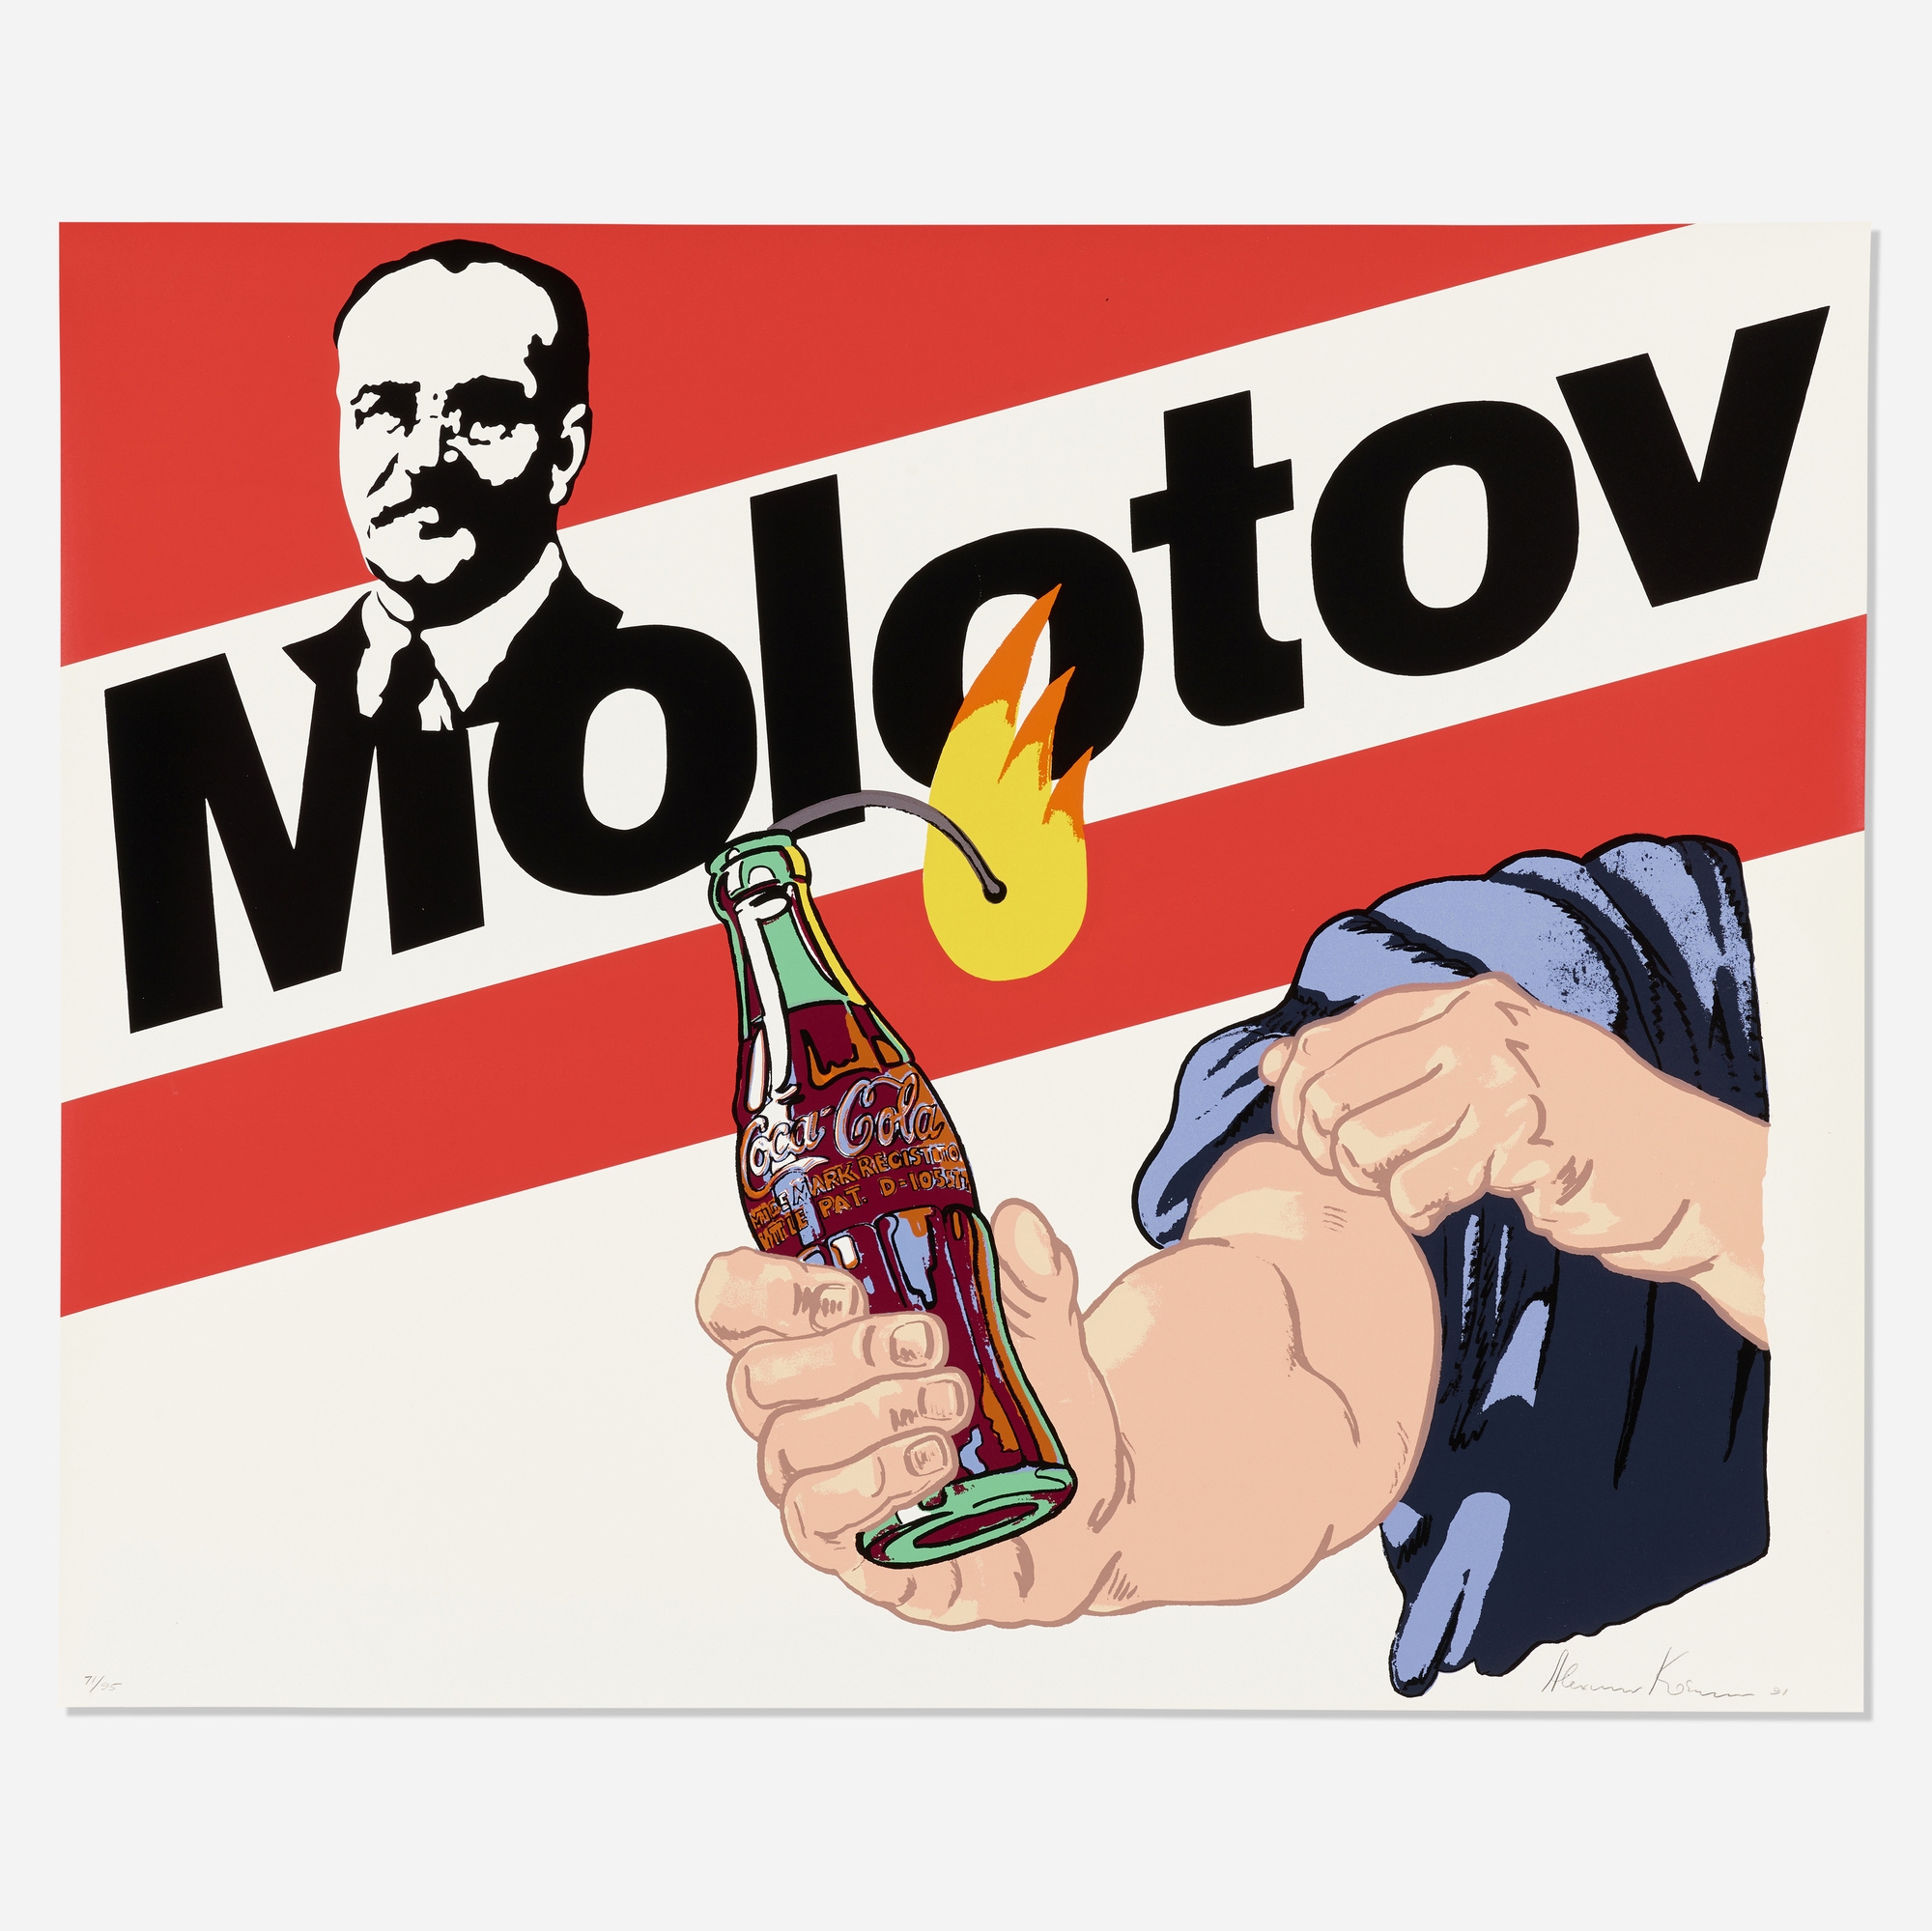 Molotov Cocktail by Alexander Kosolapov, 1991